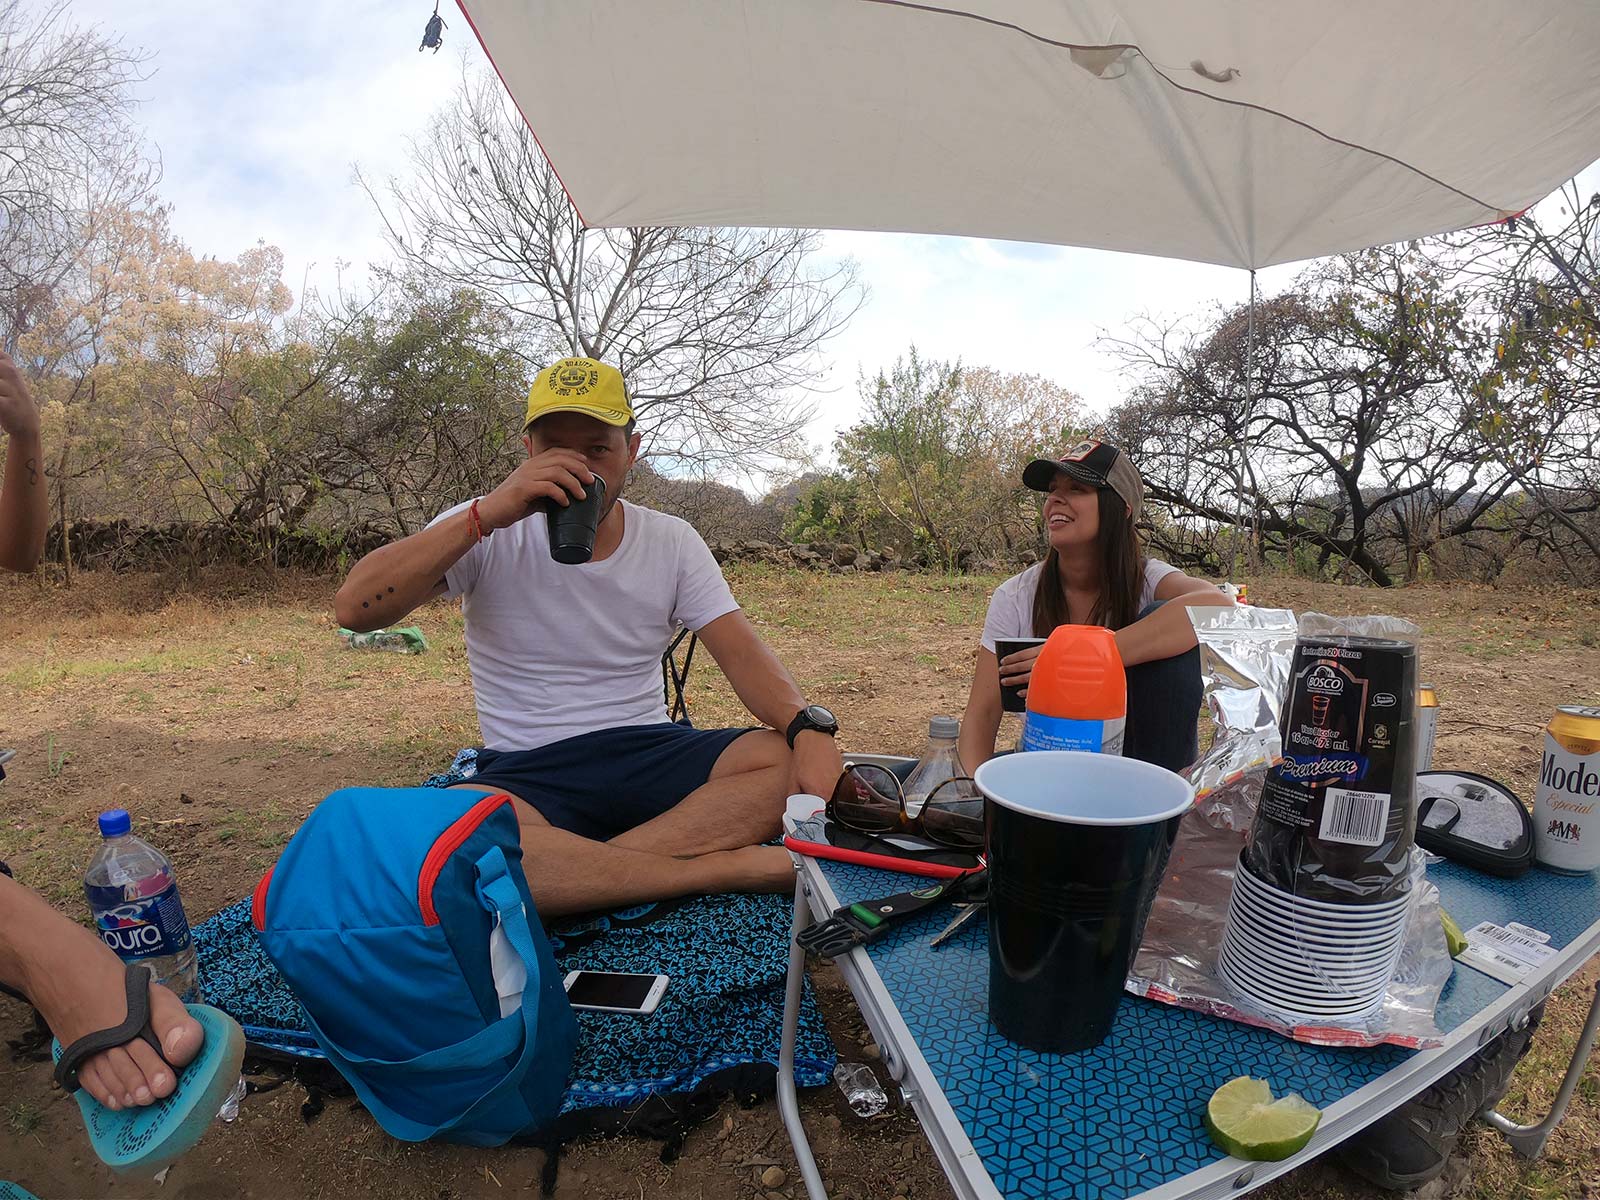 Una tranquila tarde acampando en Xopilco para acampar cerca de cdmx